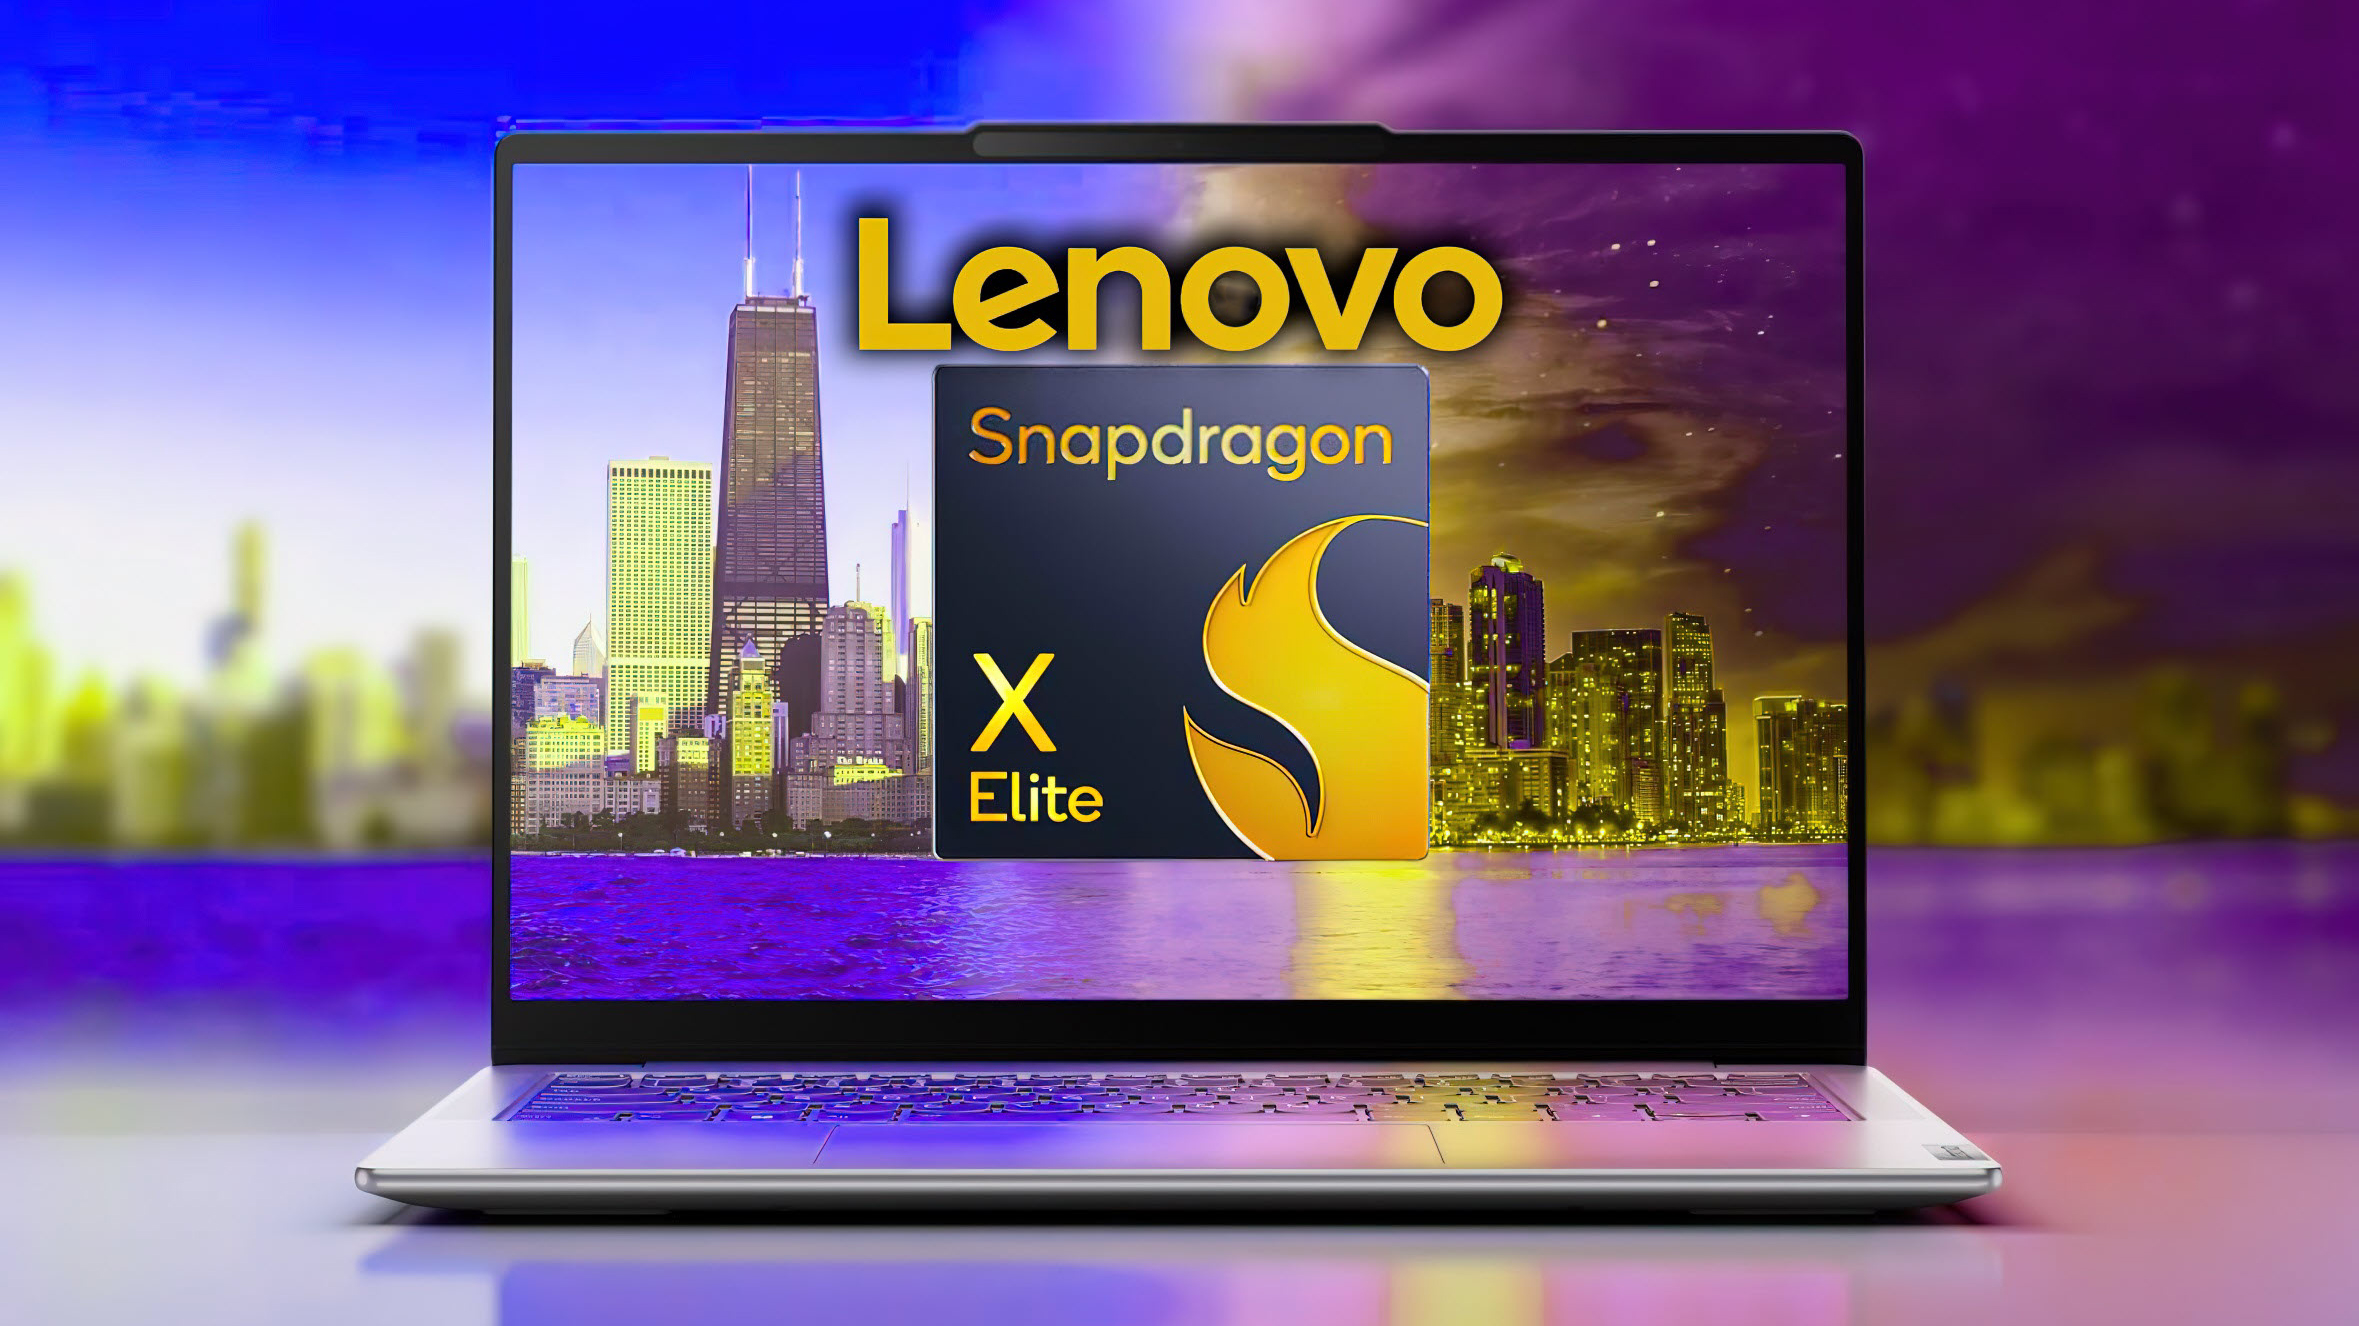 В готовящемся к выходу Lenovo X1E78100 будет установлен процессор Snapdragon X Elite